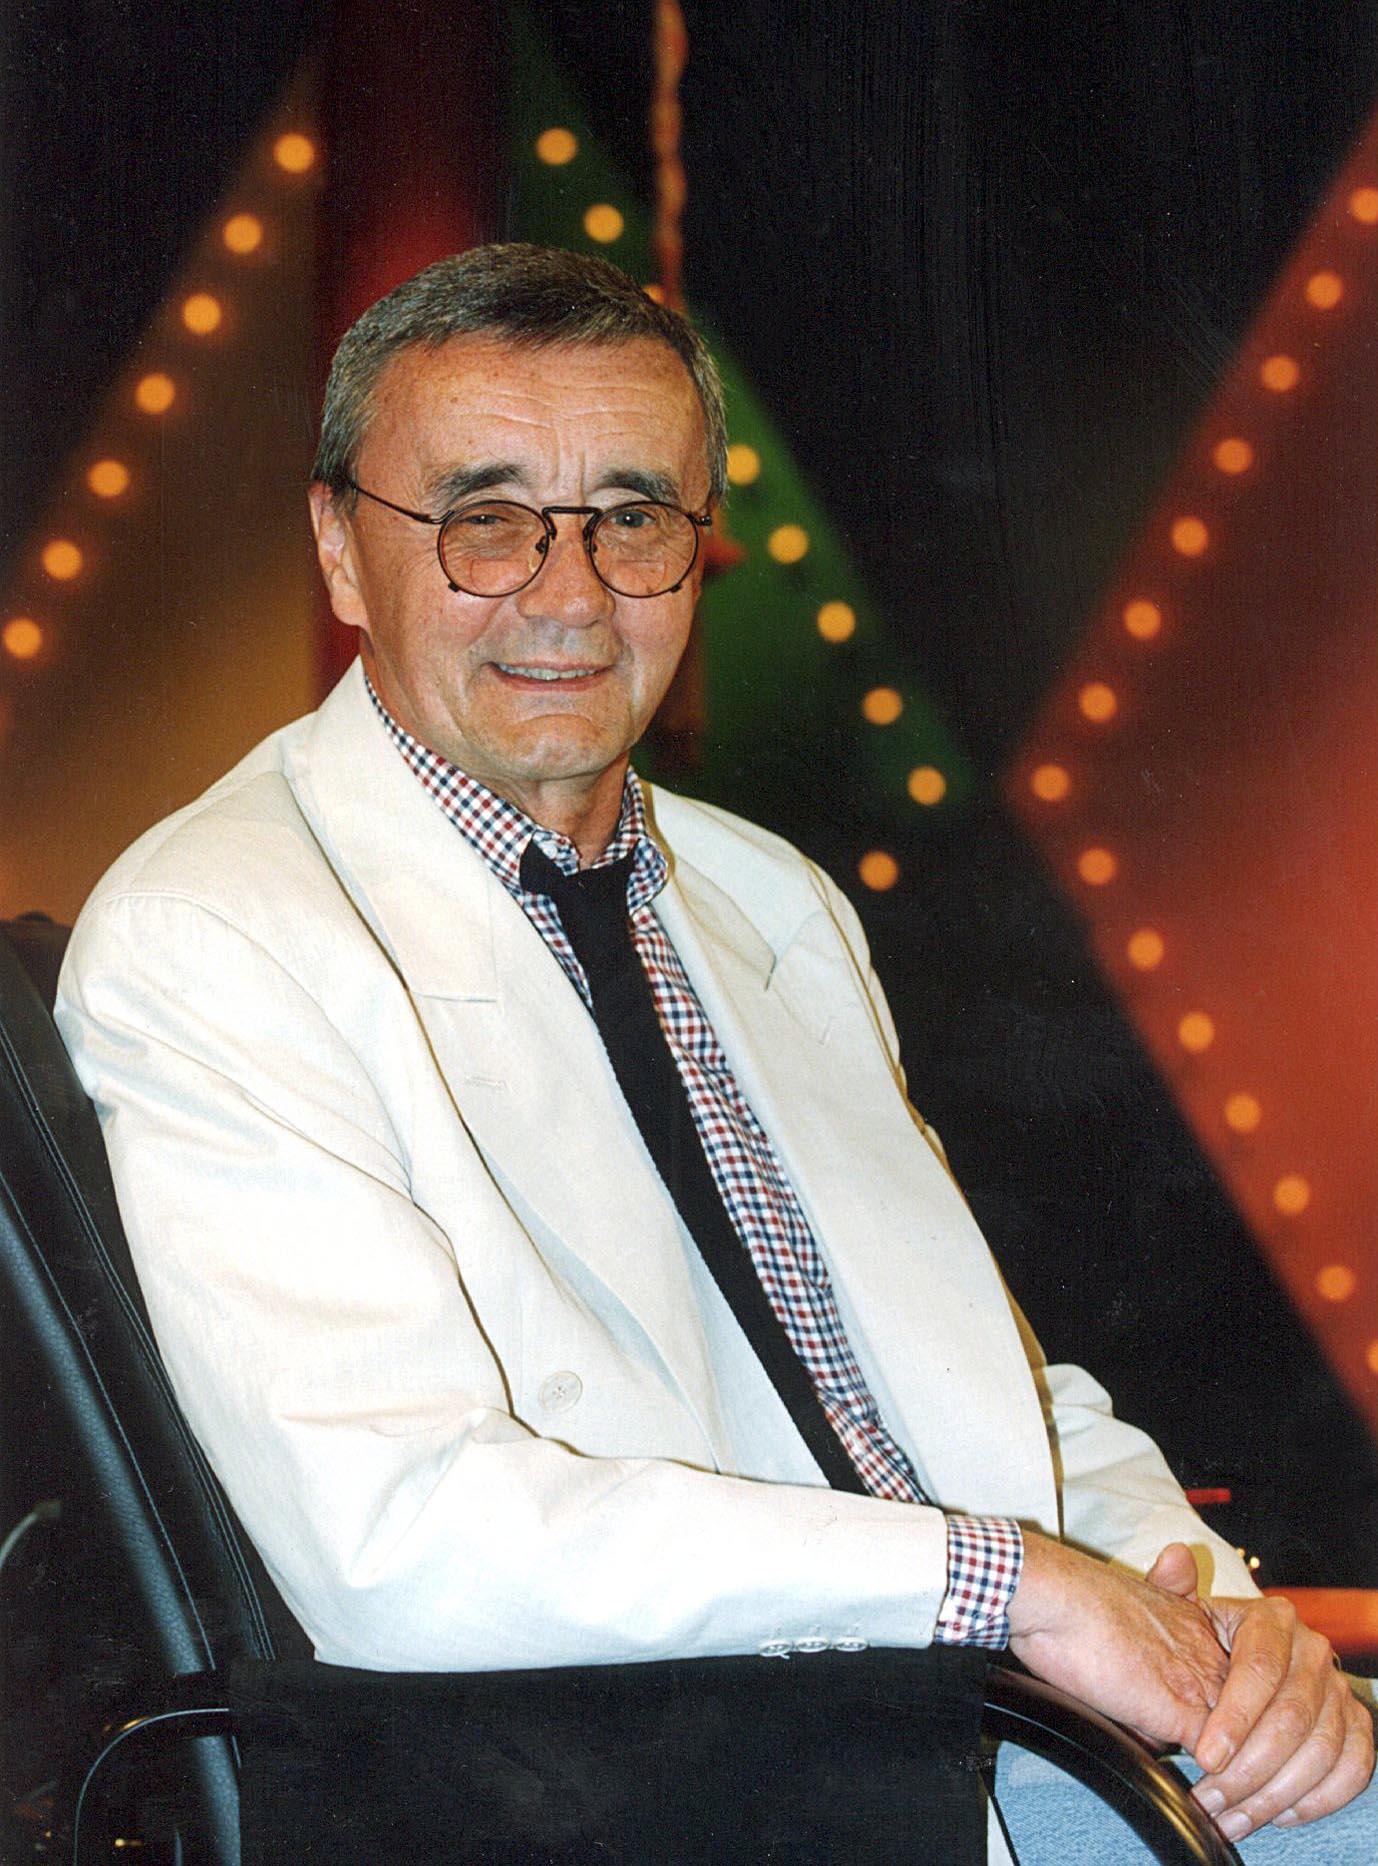 Skådespelaren och komikern Jarl Borssén har avlidit.
Jarl Borssén blev 75 år.